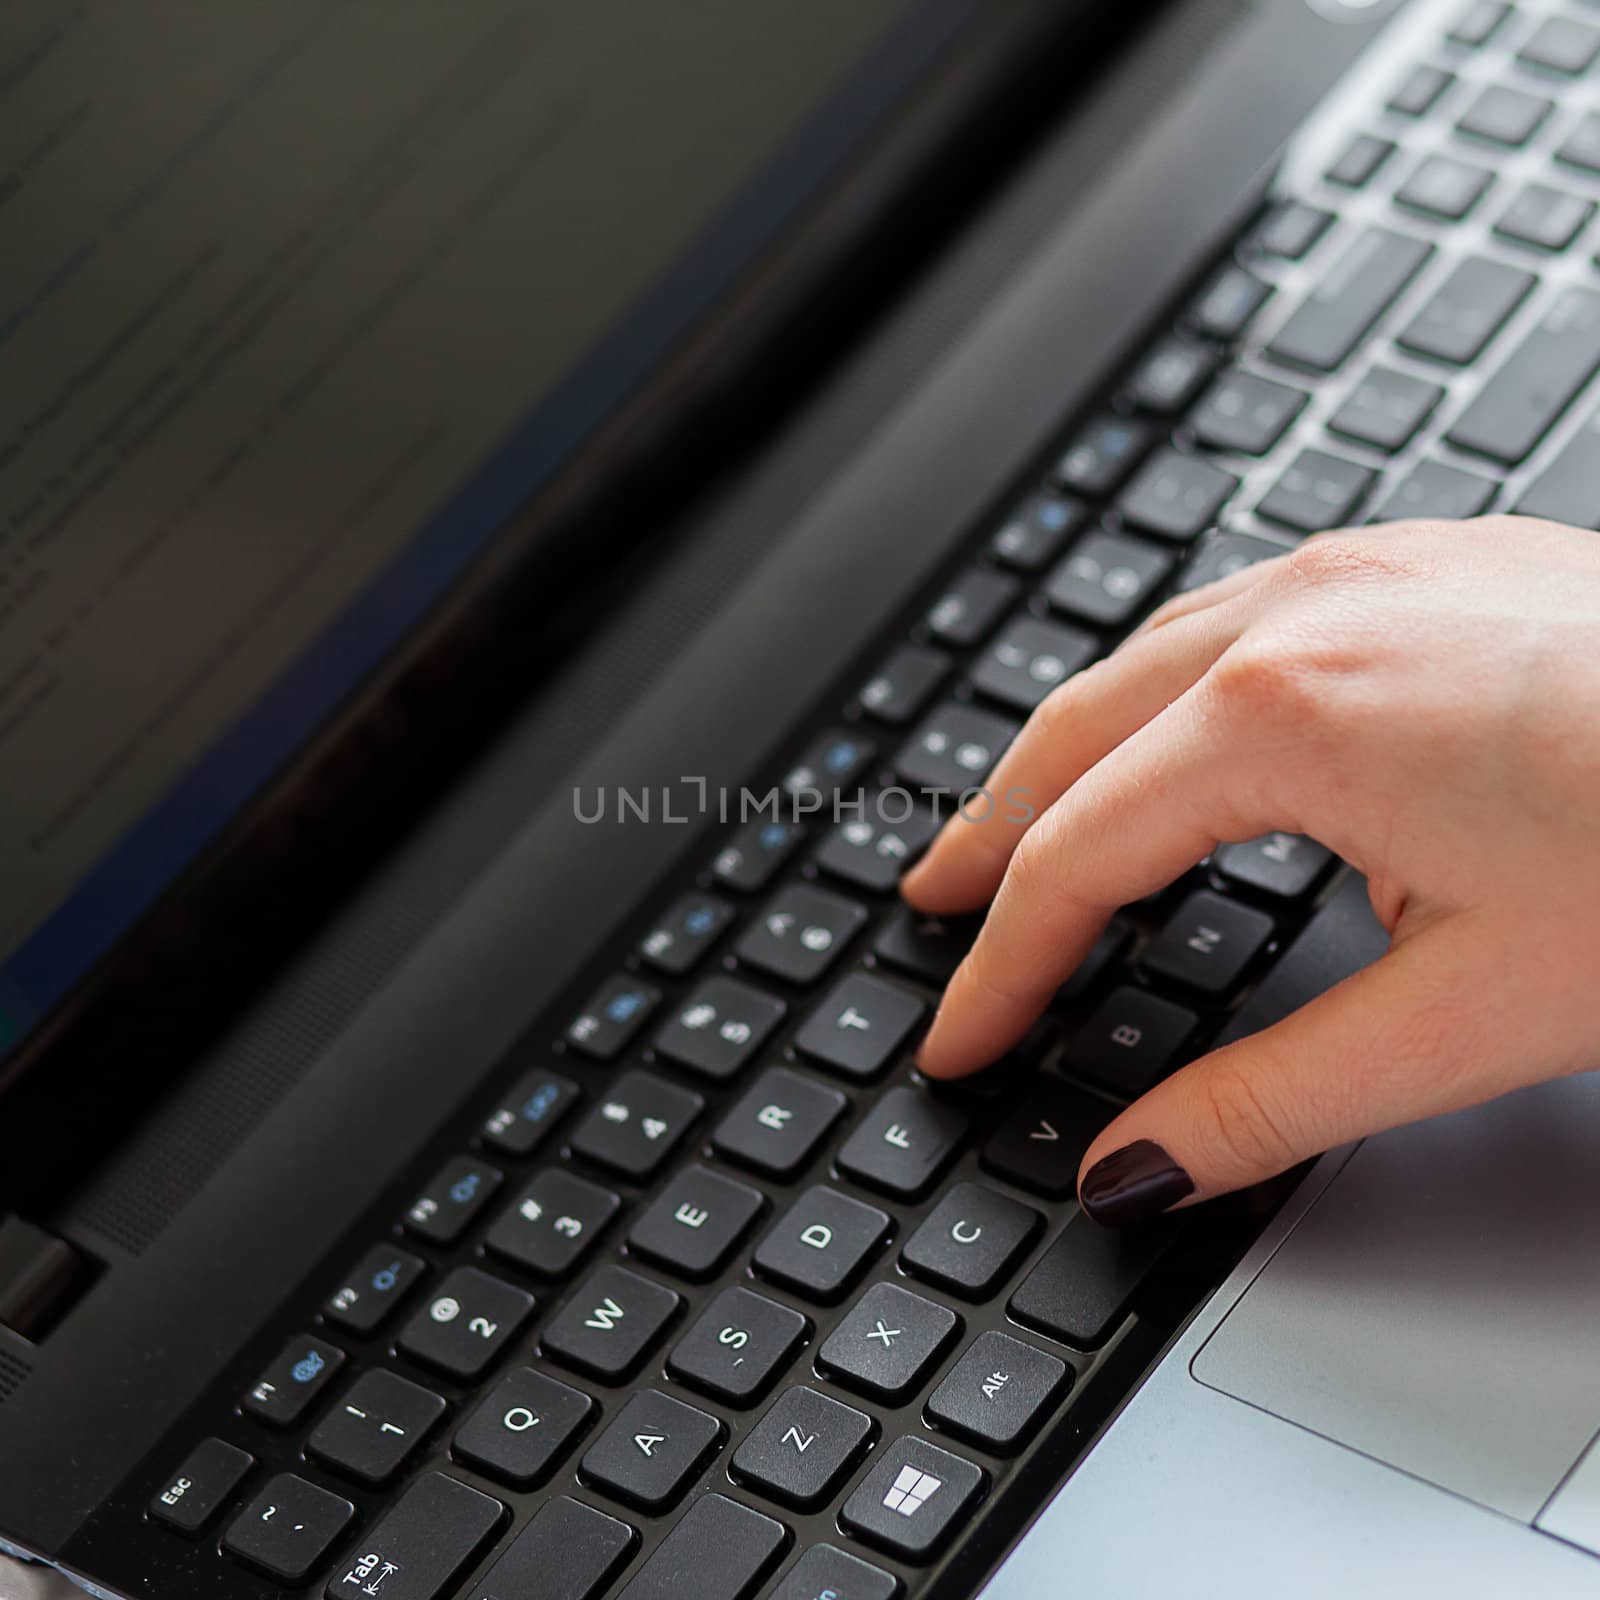 Woman's hands on notebook keyboard by rufatjumali